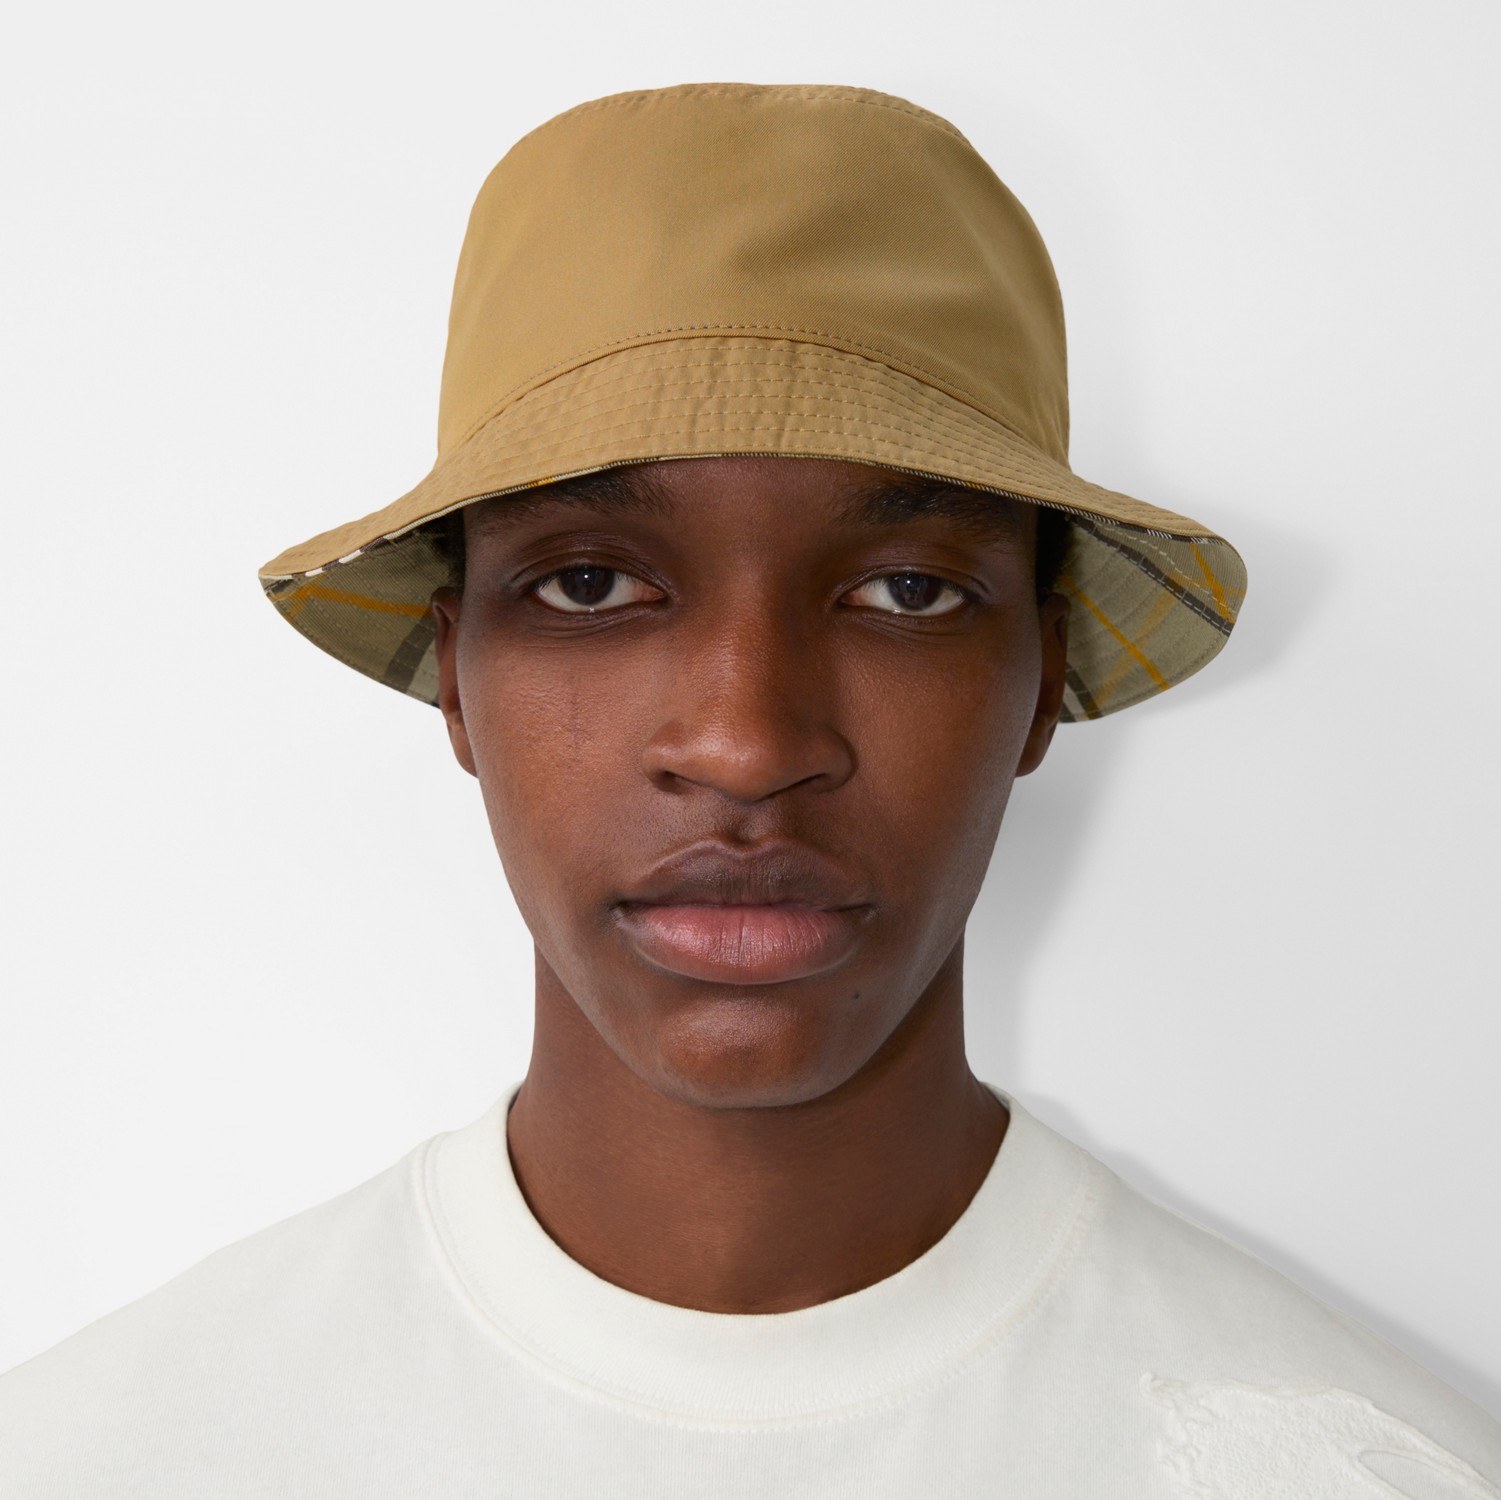 Sombrero de pesca reversible en algodón